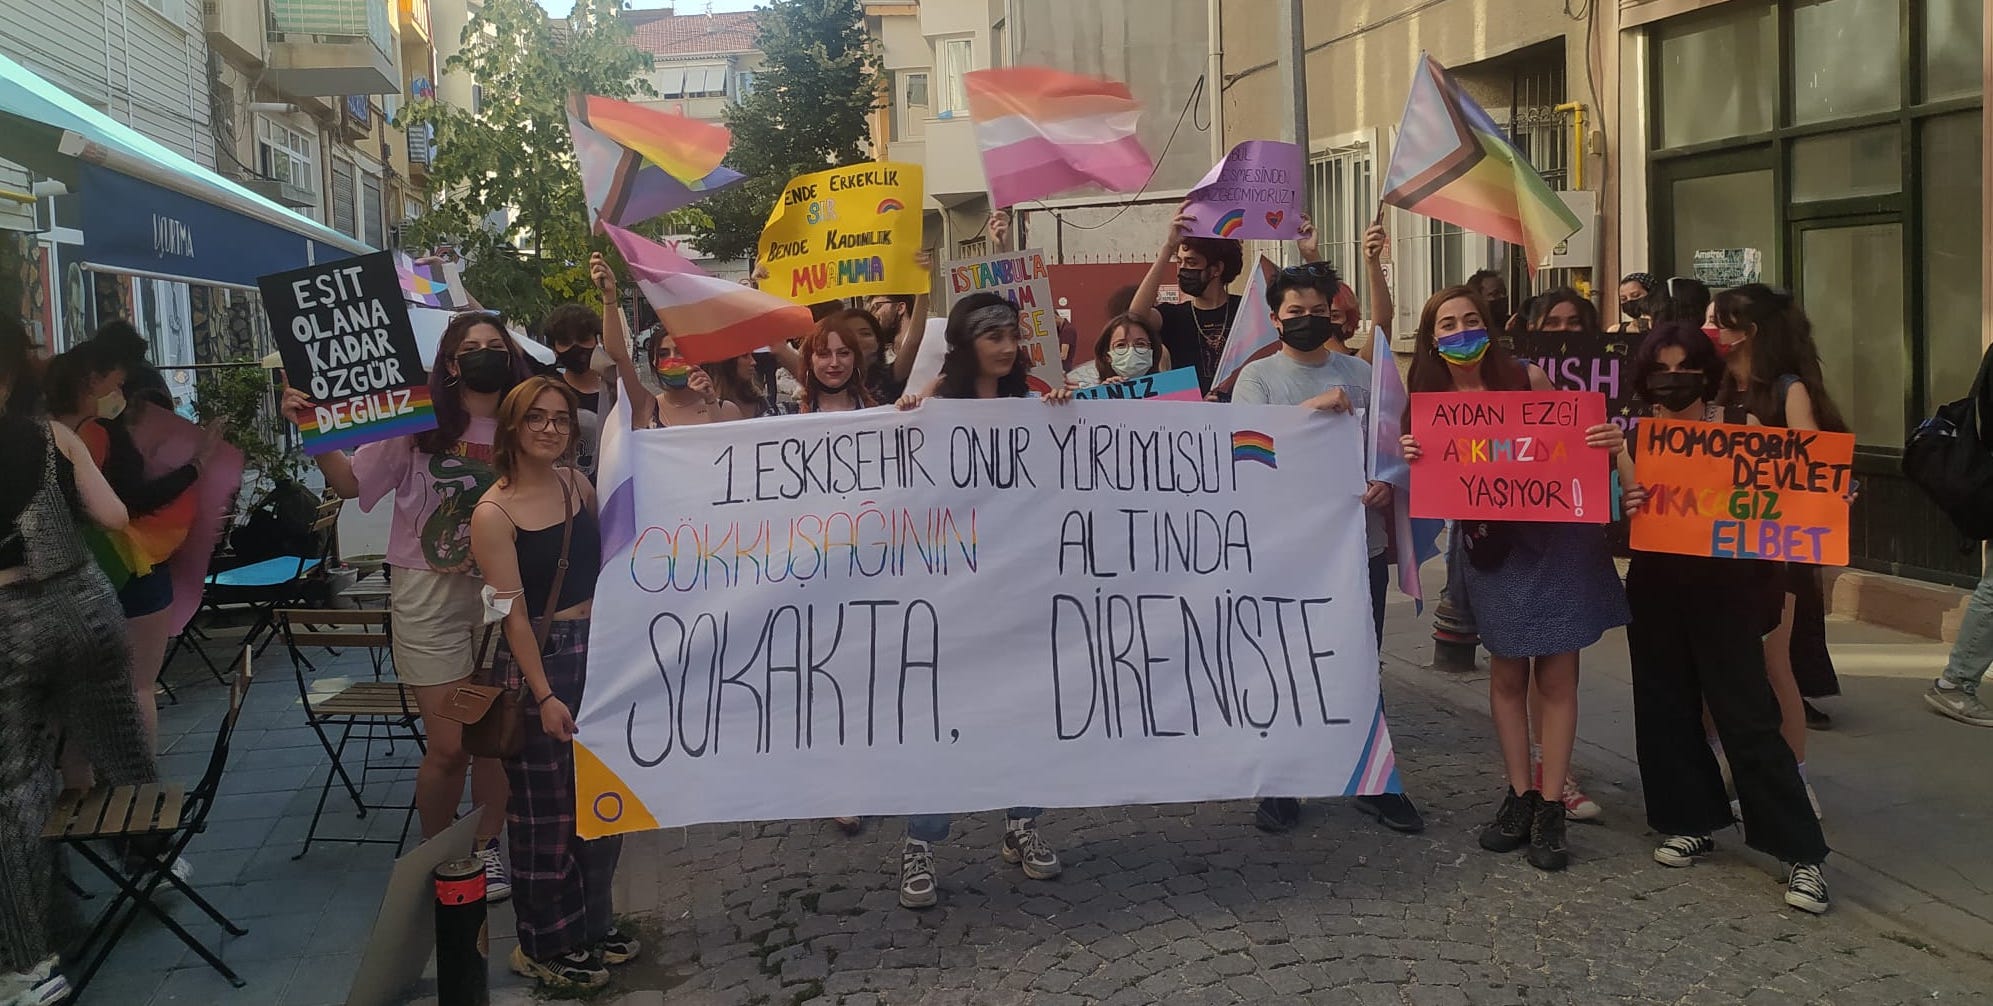 Eskişehir Onur Yürüyüşü’nde gözaltına alınan çocuklar beraat etti Kaos GL - LGBTİ+ Haber Portalı